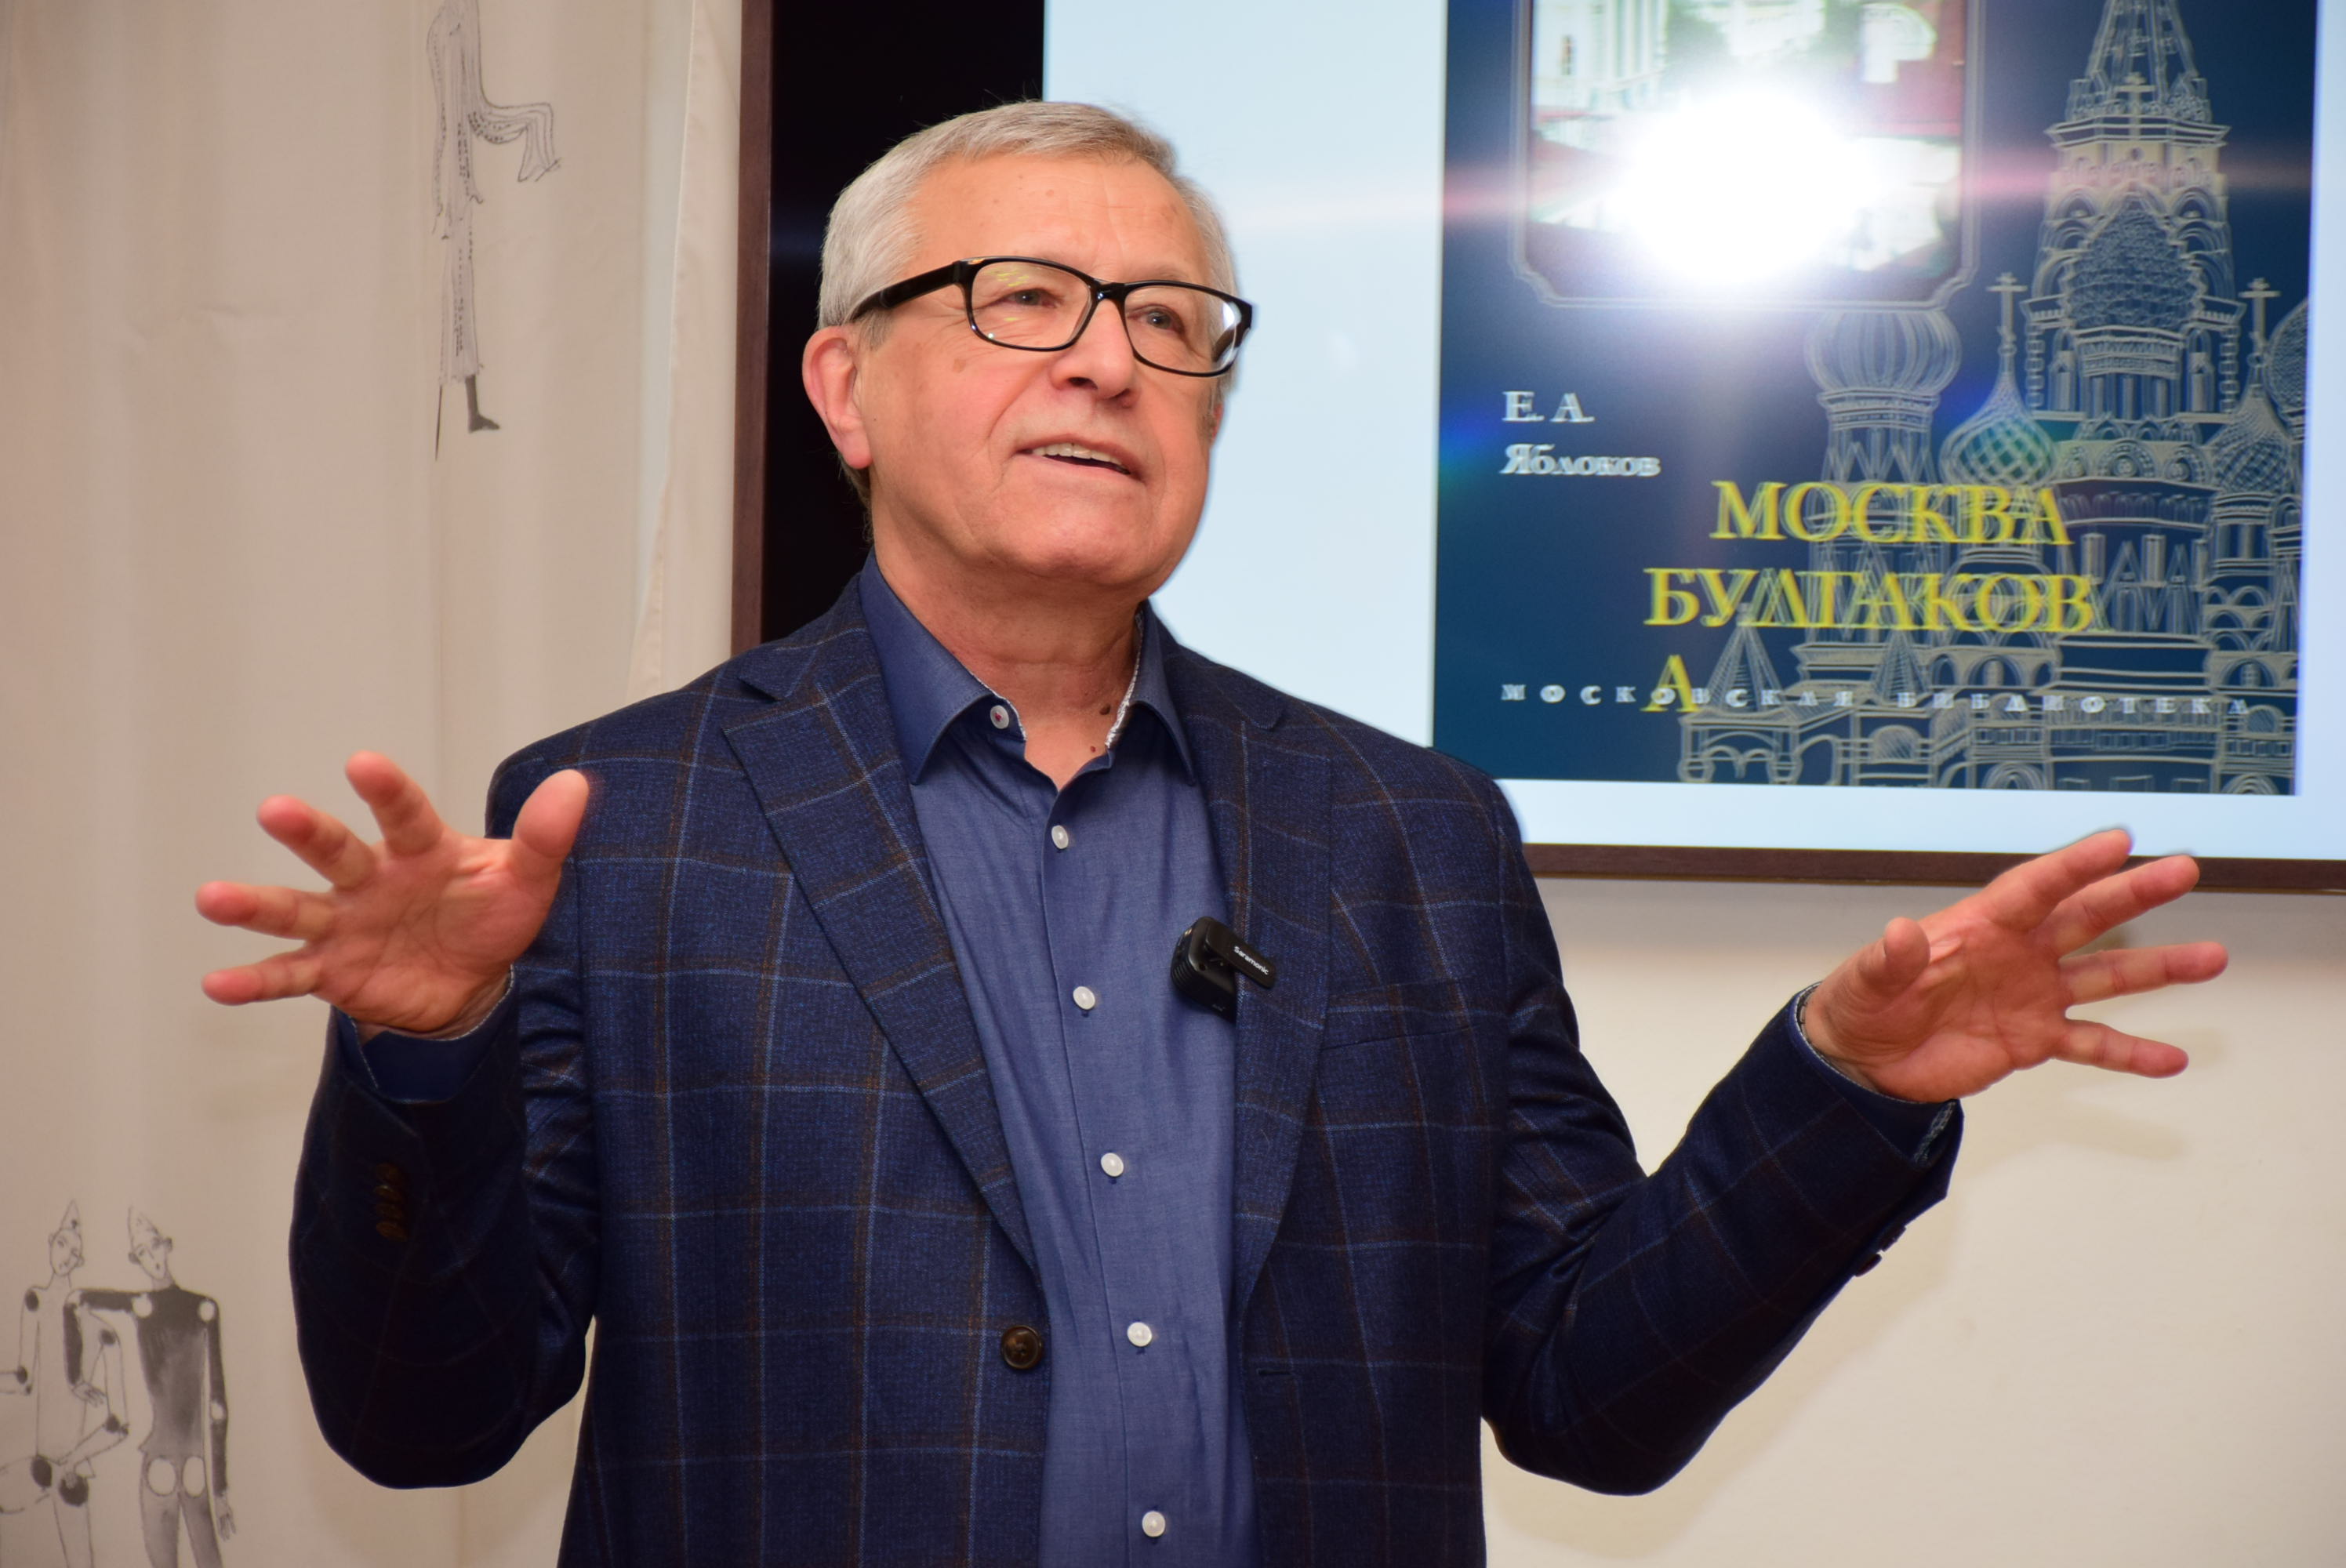 Лекцию о Москве Михаила Булгакова прочел в РГБИ Евгений Яблоков 